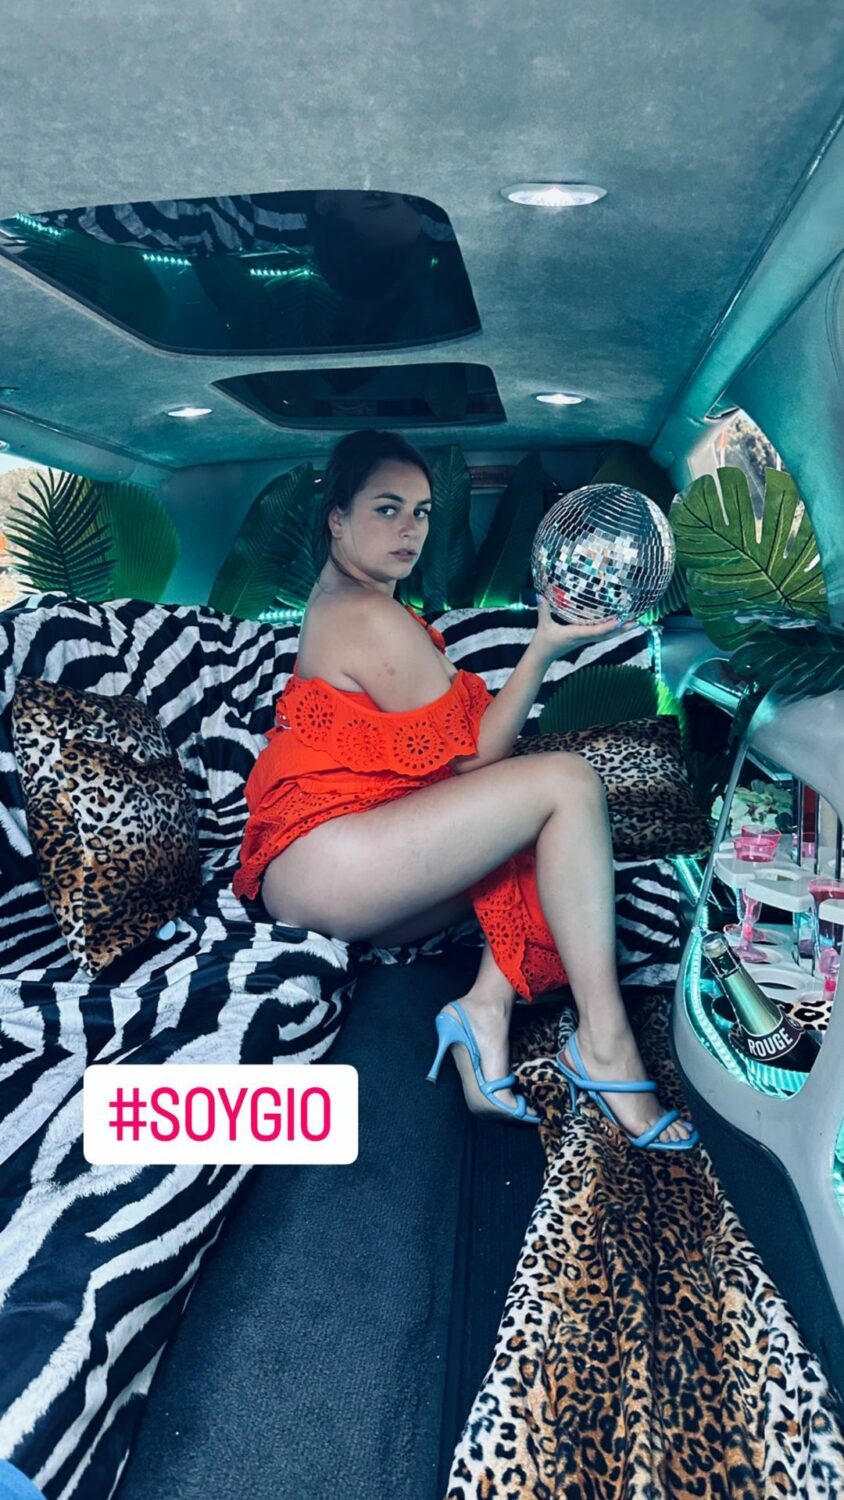 (Muito) sensual, Ana Guiomar volta a &#8220;comparar-se&#8221; a Georgina Rodríguez: &#8220;Soygio&#8230;&#8221;